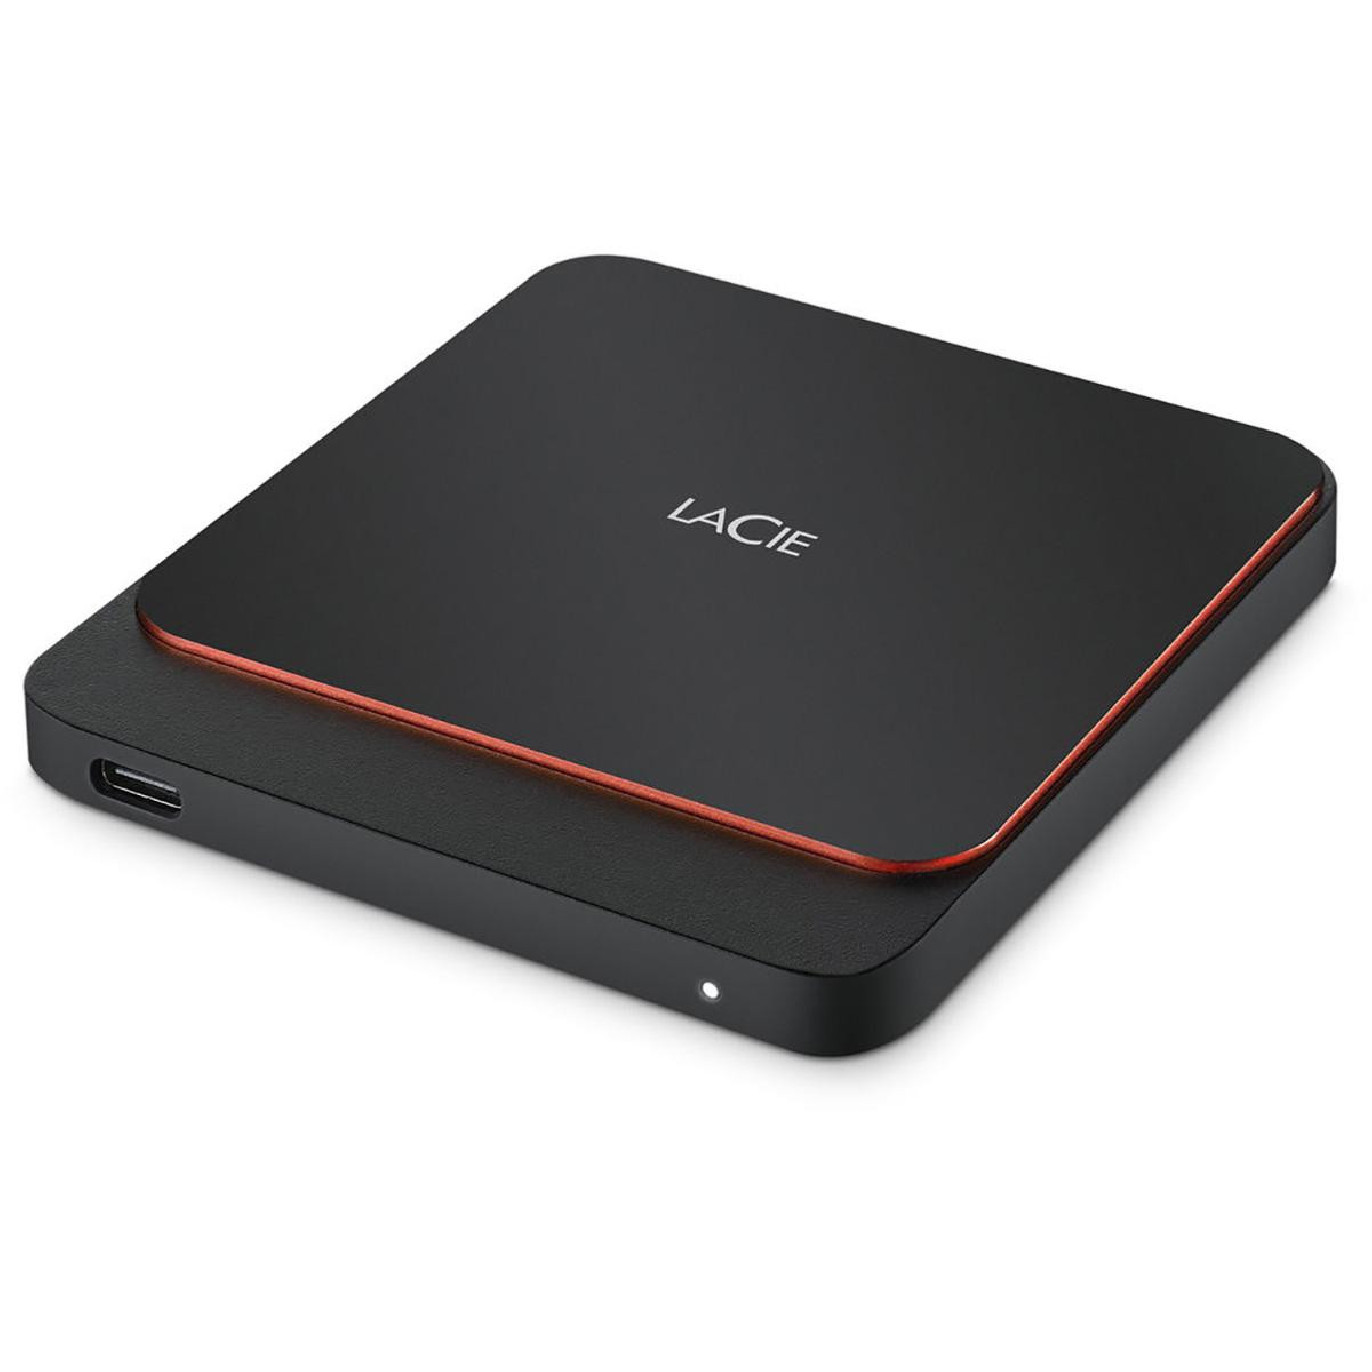 Lacie Disque Dur Portable SSD 500GB USB-C - Prophot